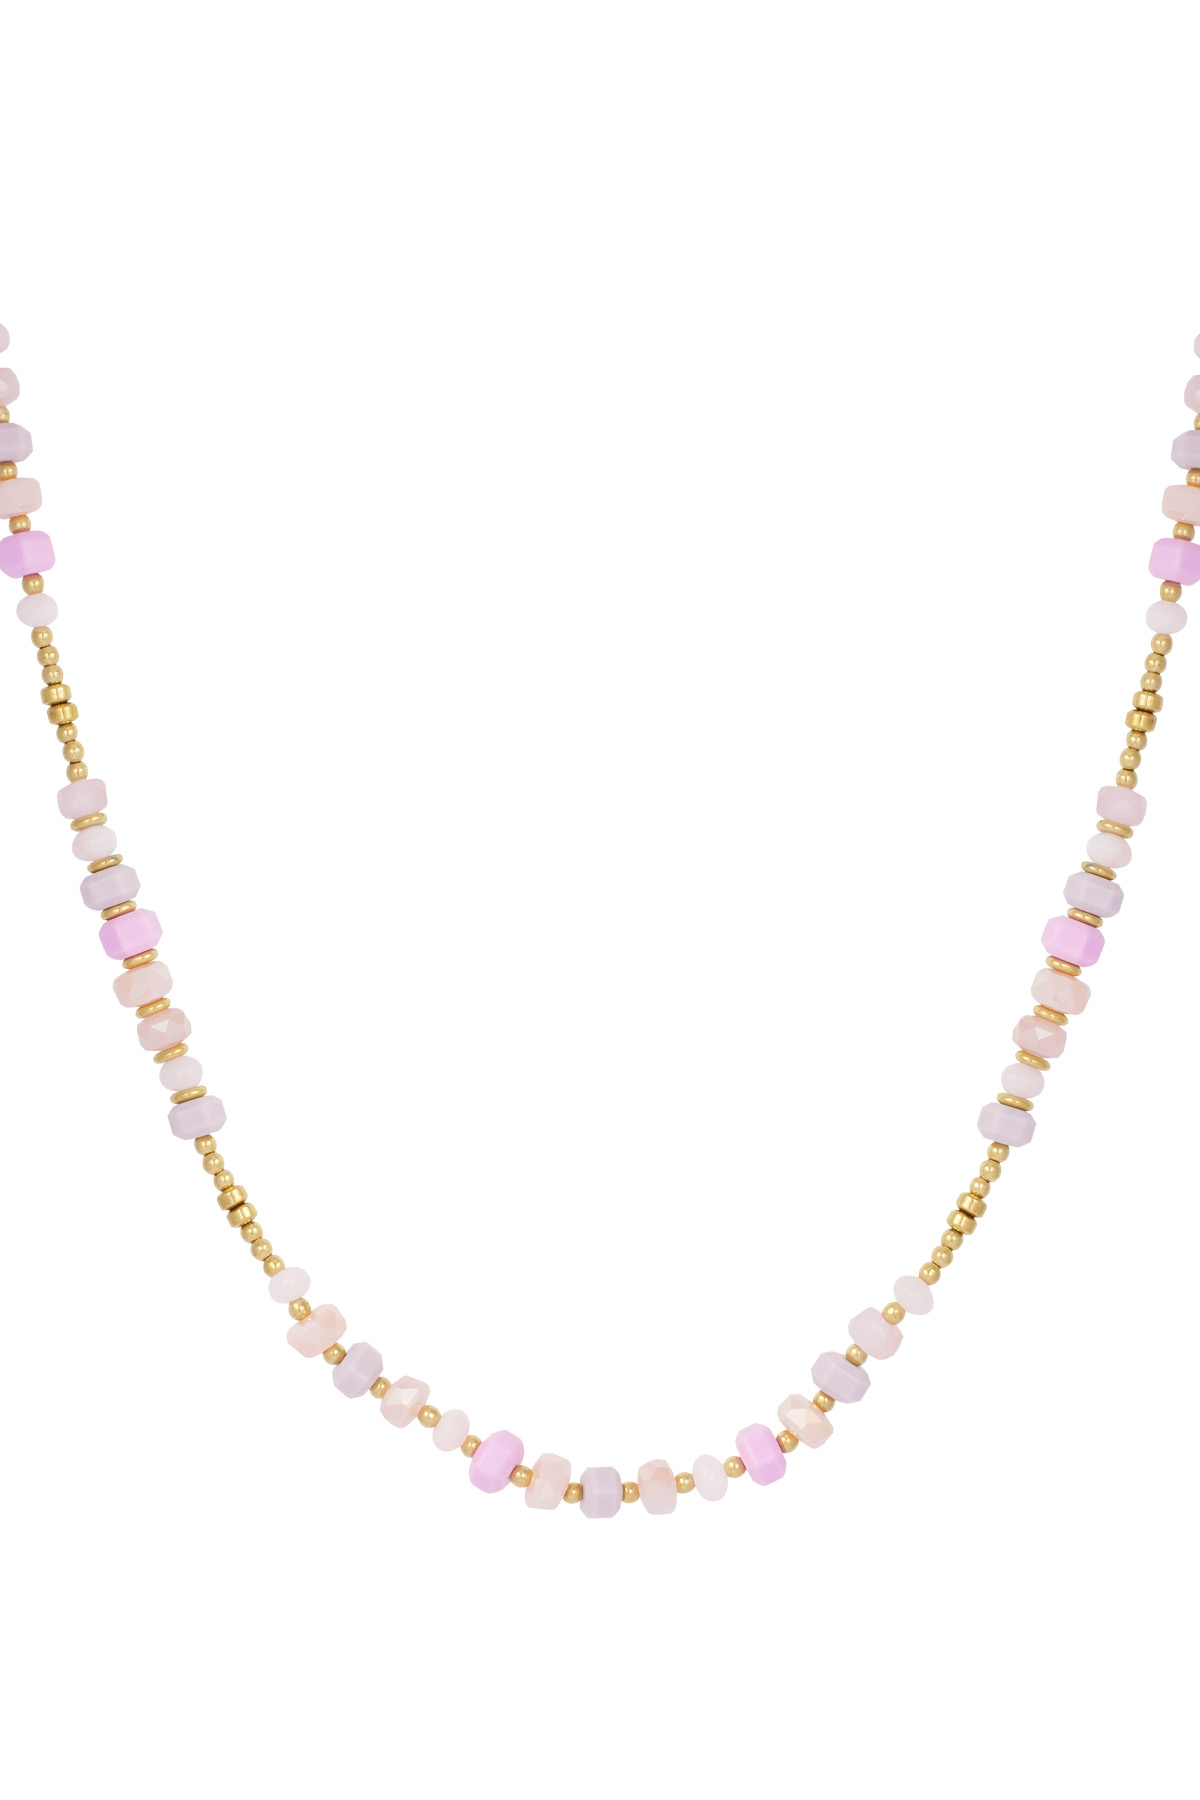 Halskette bunt gewickelt - rosa/gold  h5 